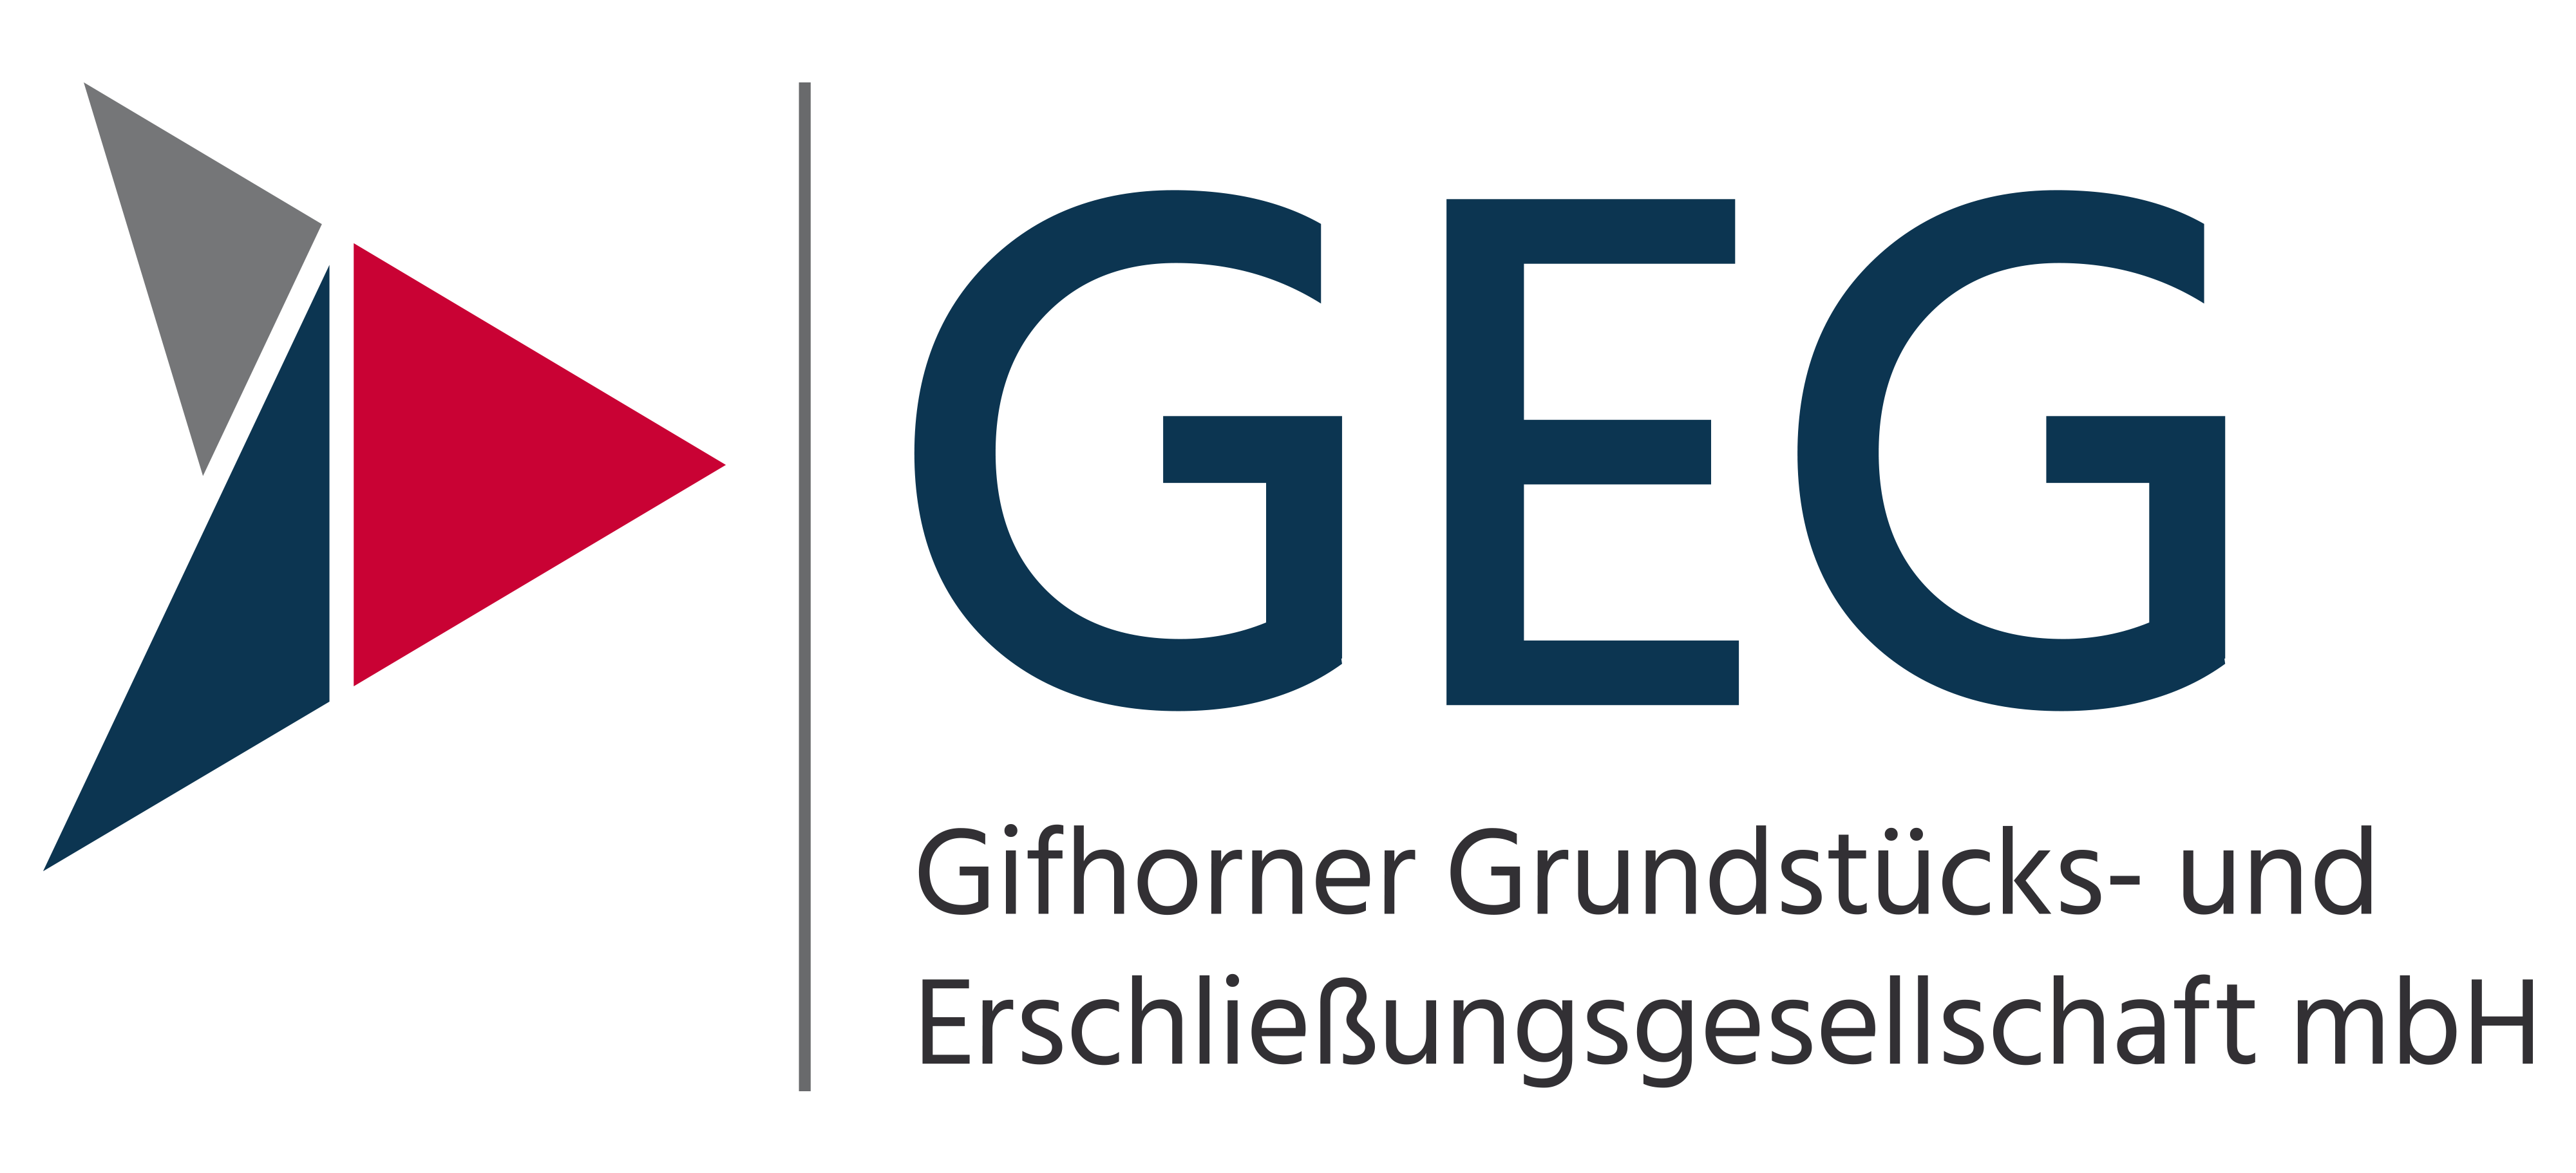 Gifhorner Grundstücks- und Erschließungsgesellschaft mbH – Netzwerkpartner WiSta Gifhorn